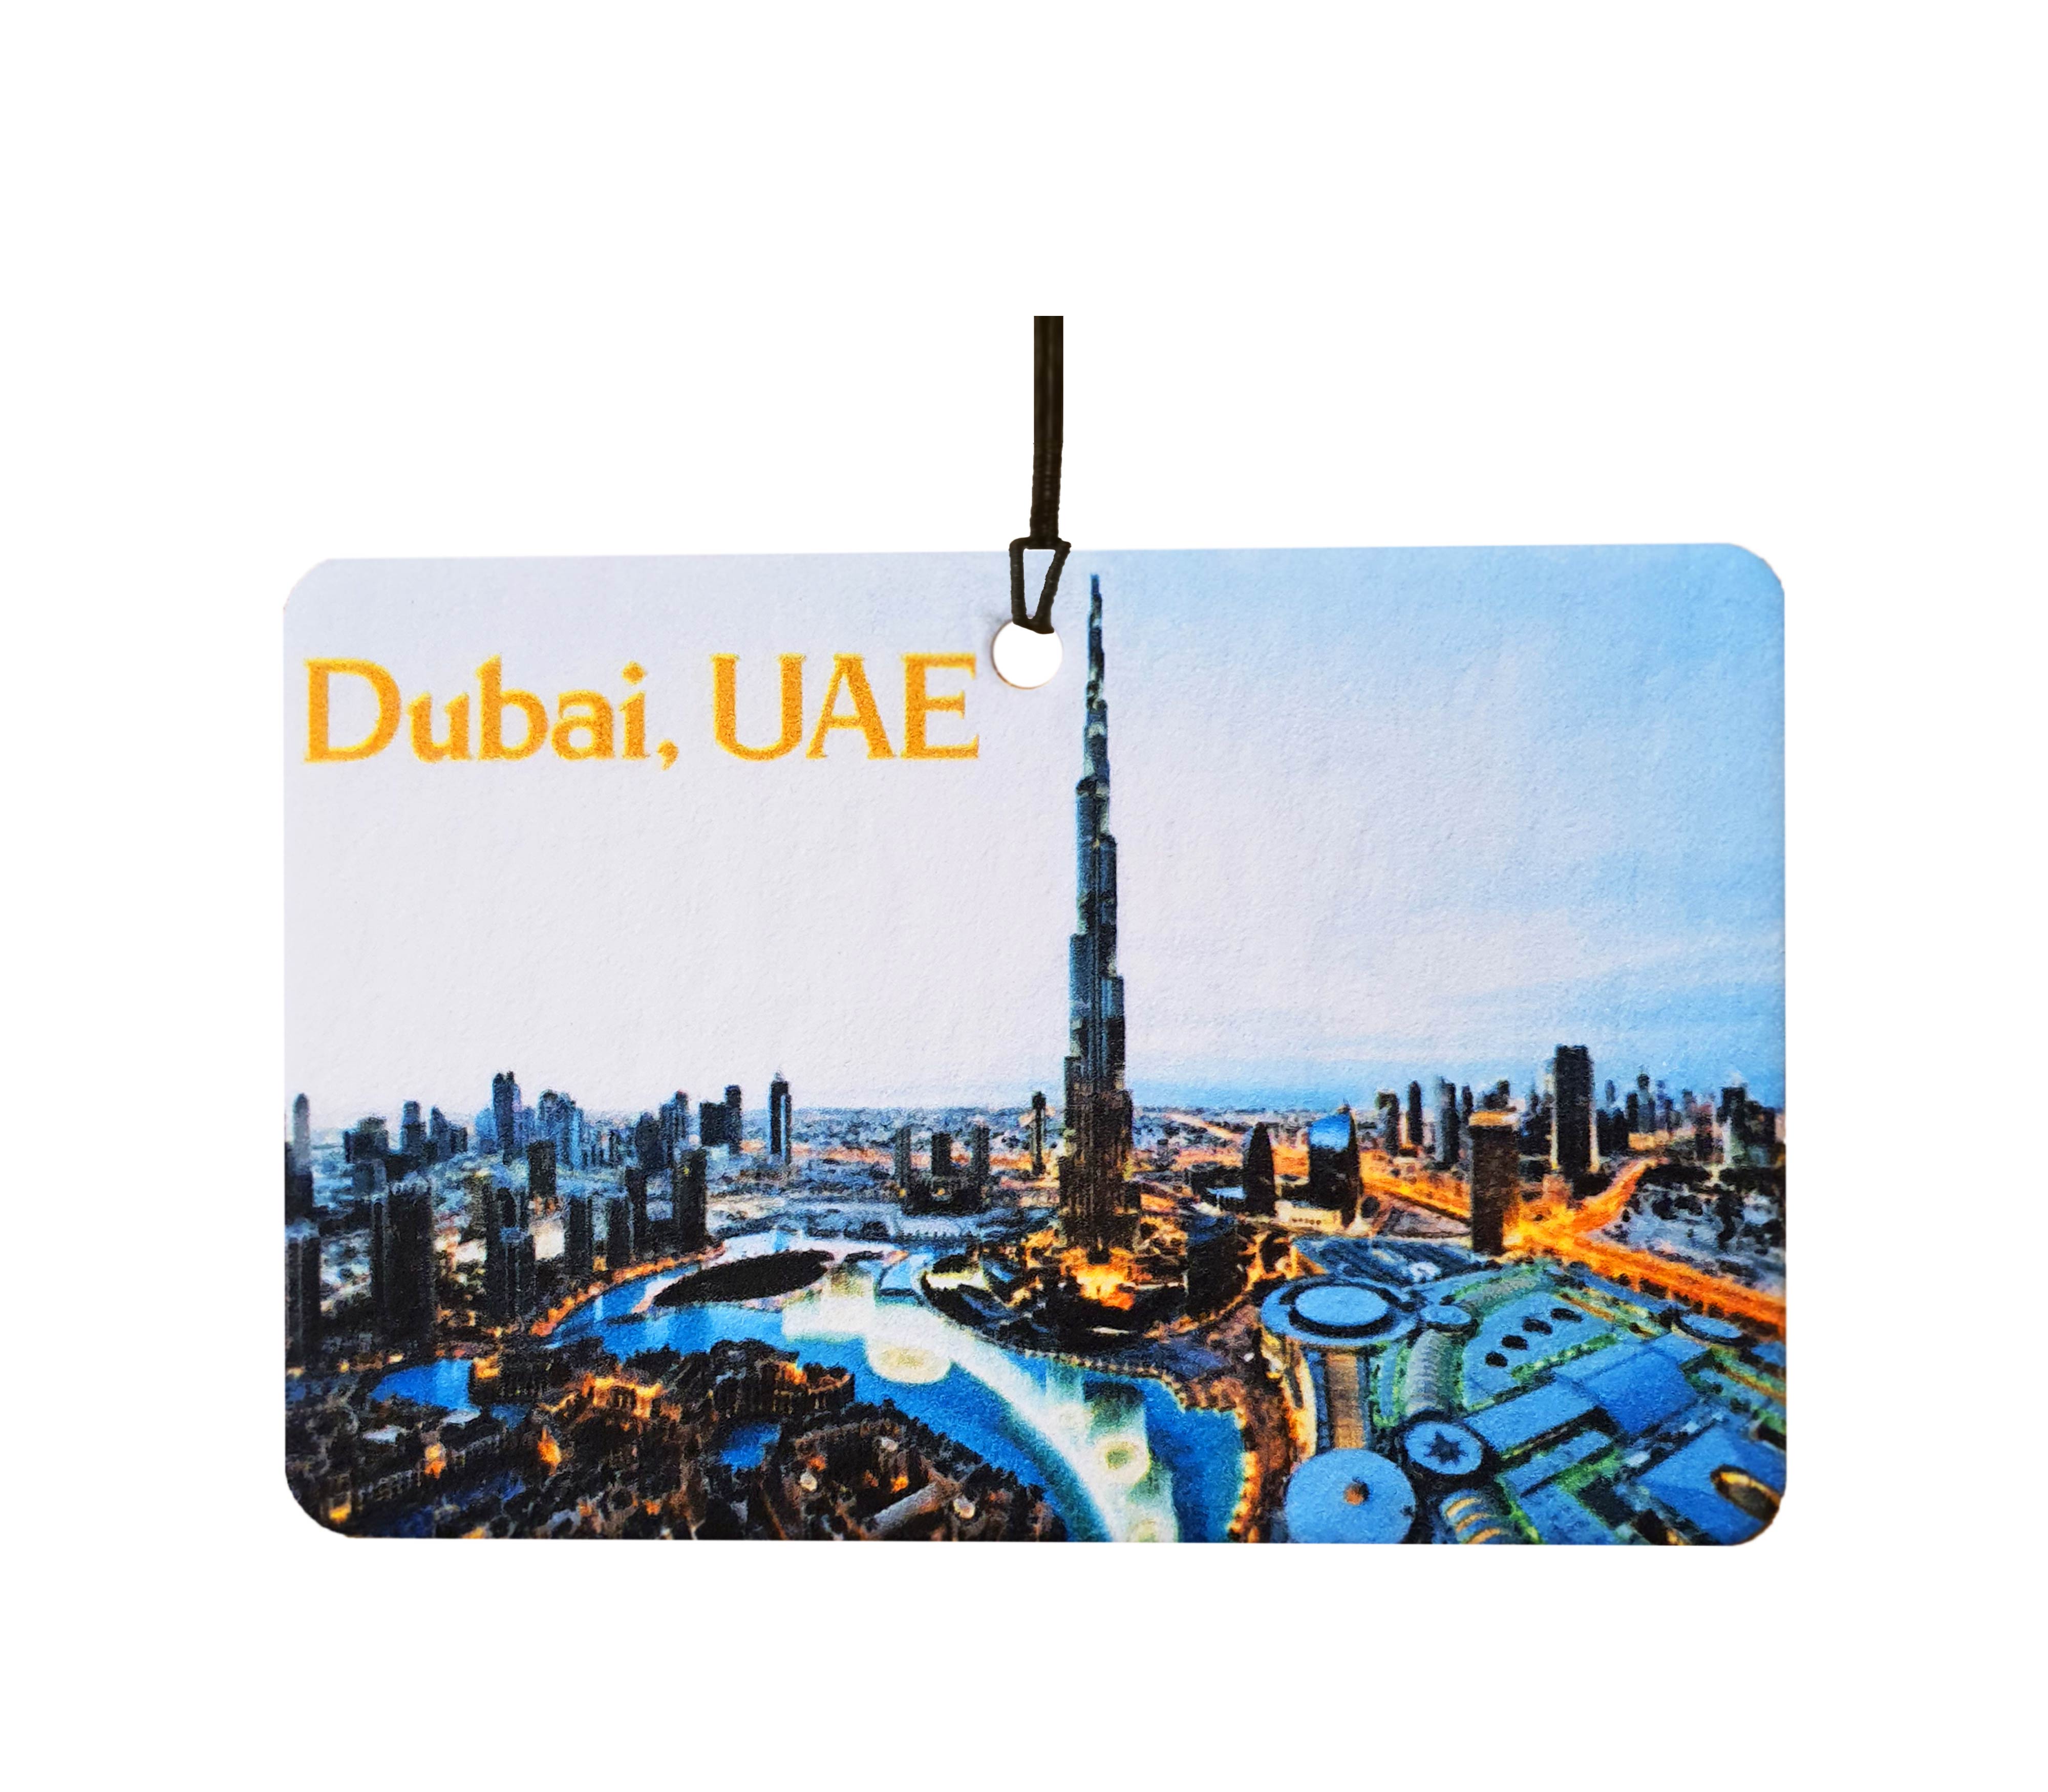 Dubai - UAE